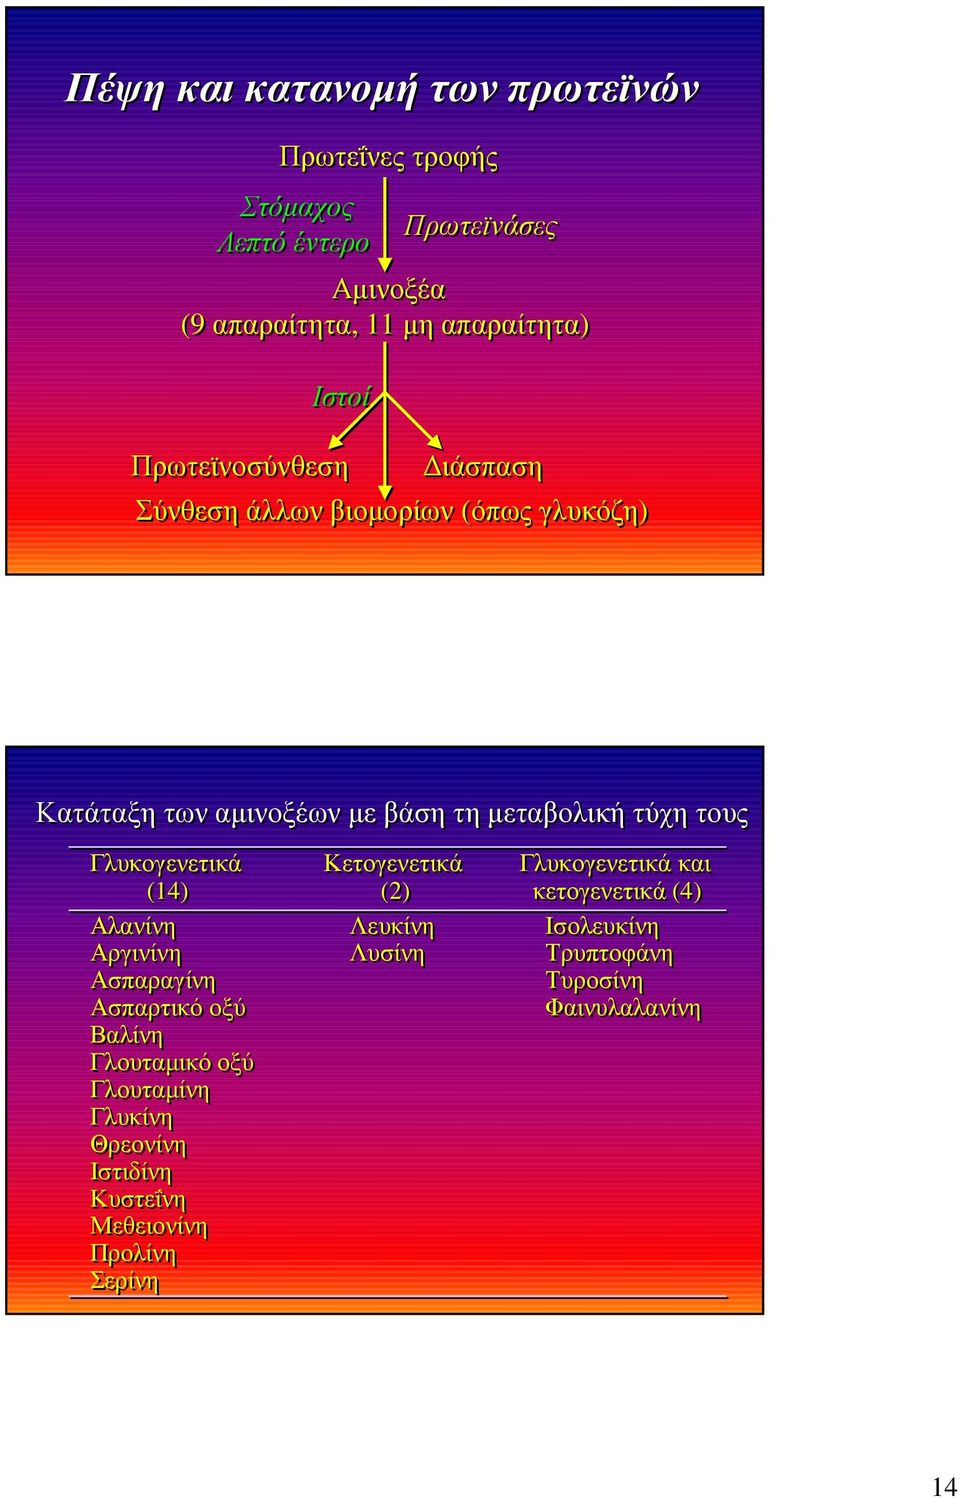 Γλυκογενετικά Κετογενετικά Γλυκογενετικά και (14) (2) κετογενετικά (4) Αλανίνη Λευκίνη Ισολευκίνη Αργινίνη Λυσίνη Τρυπτοφάνη